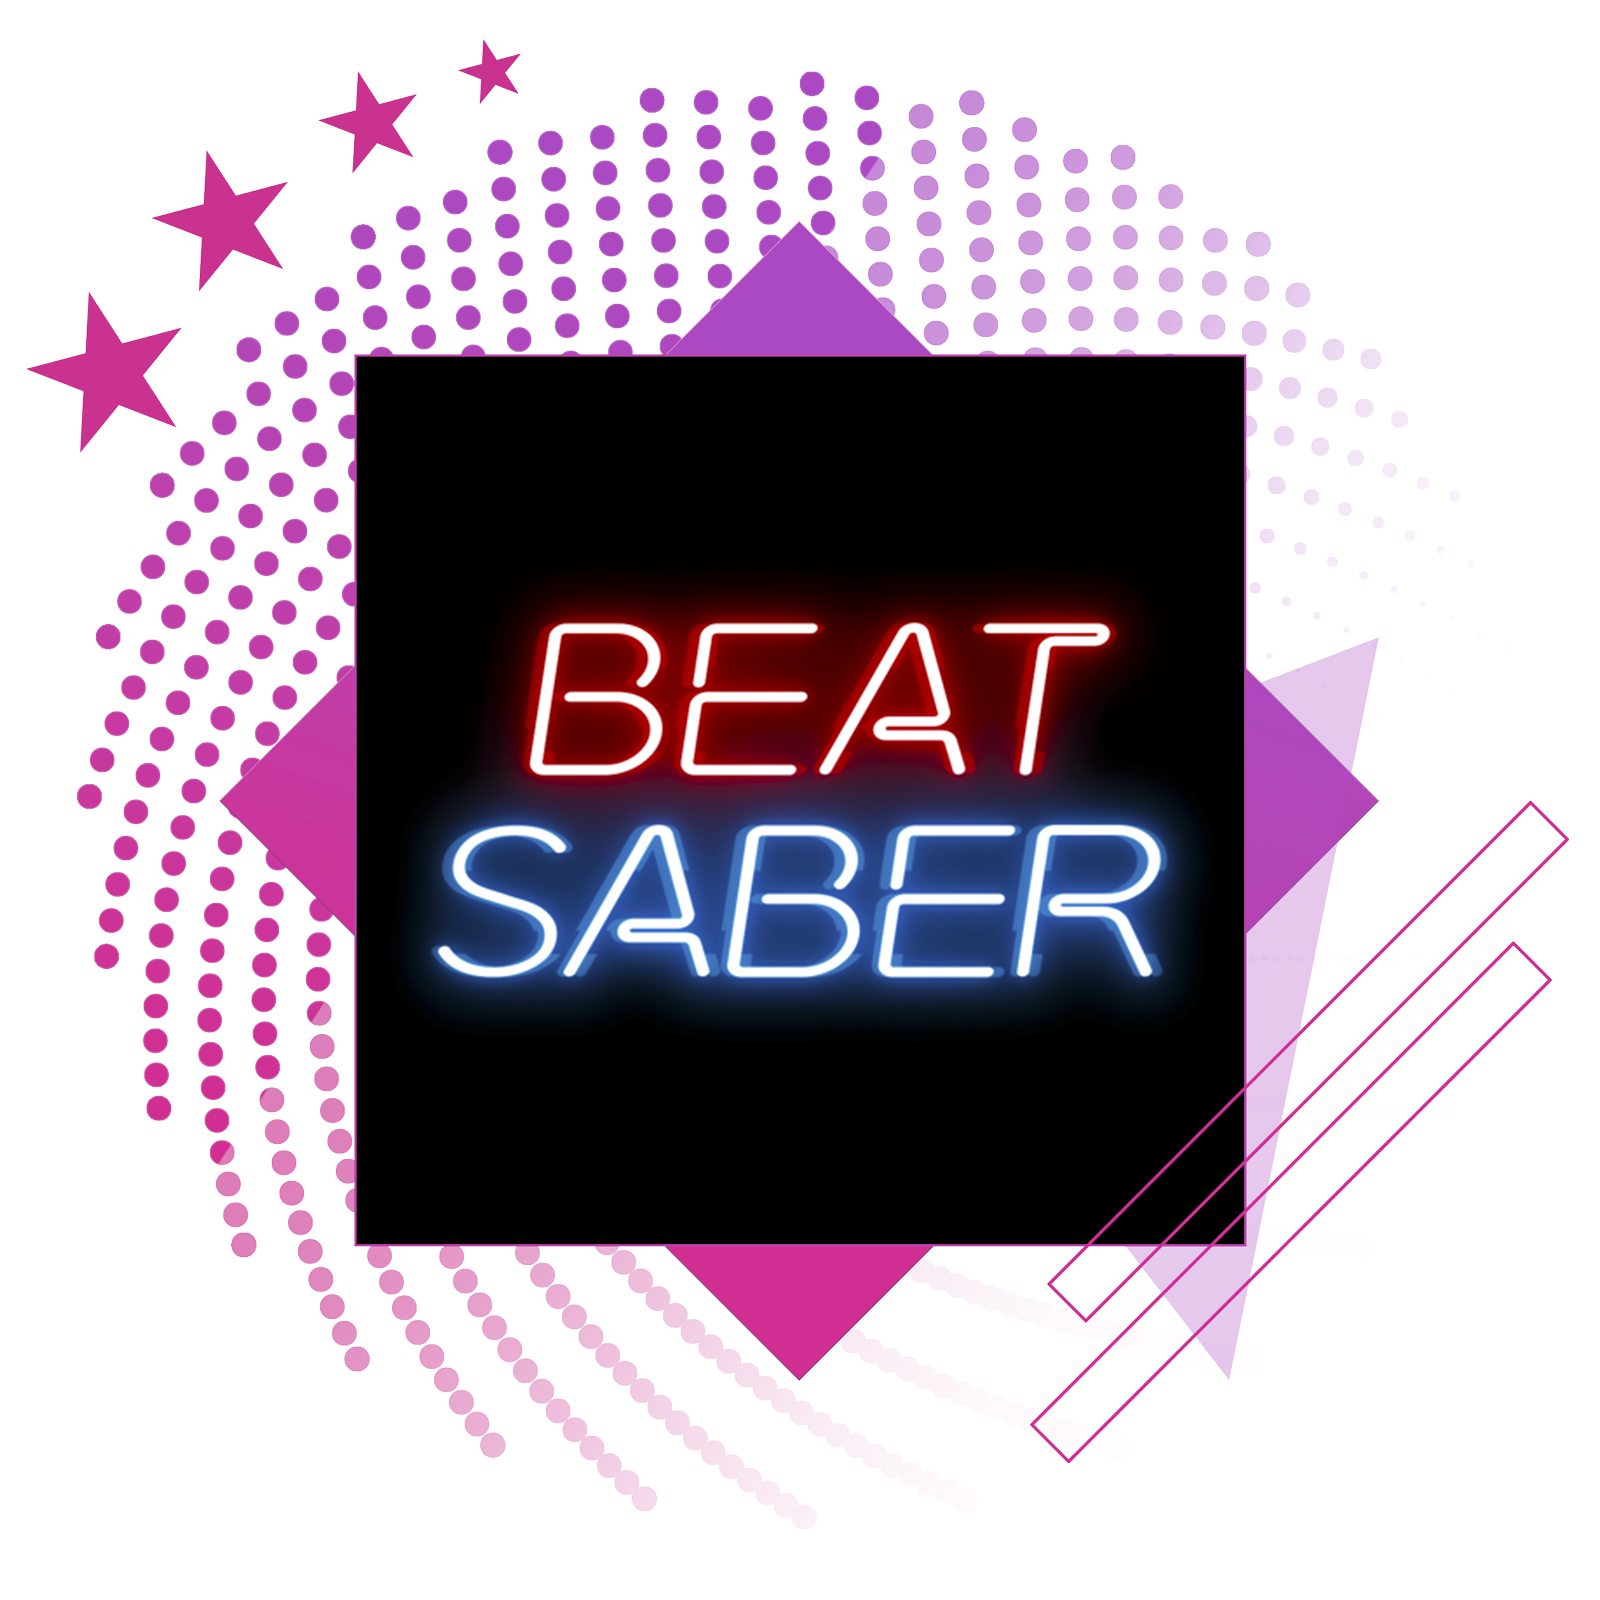 I migliori giochi musicali - Immagine in evidenza che include l'immagine principale di Beat Saber.